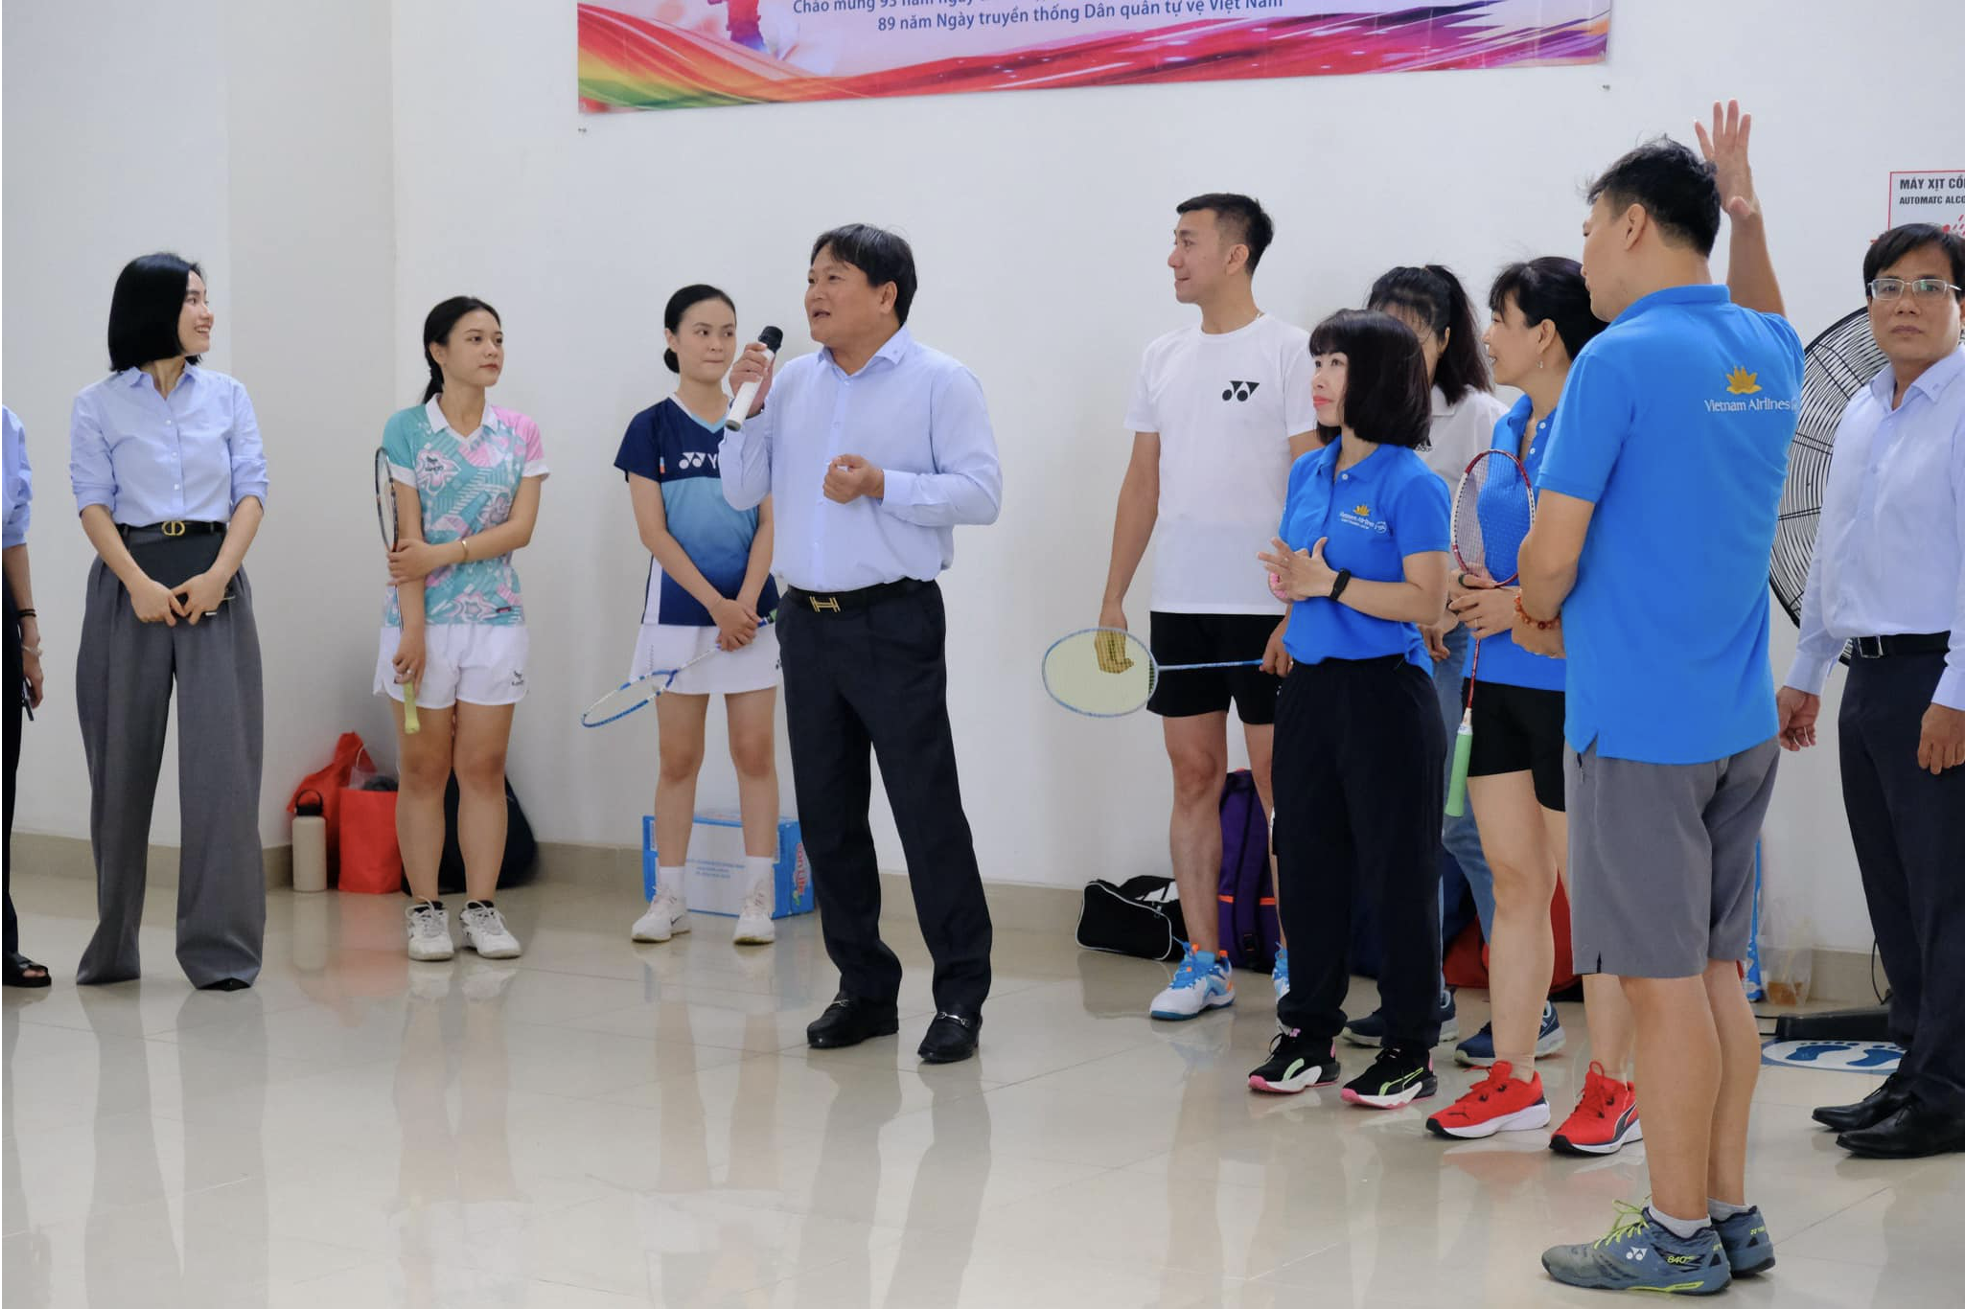 Thay mặt Ban lãnh đạo TTHL, Ông Lâm Quang Nam - Giám đốc phát biểu và khai mạc hội thao.